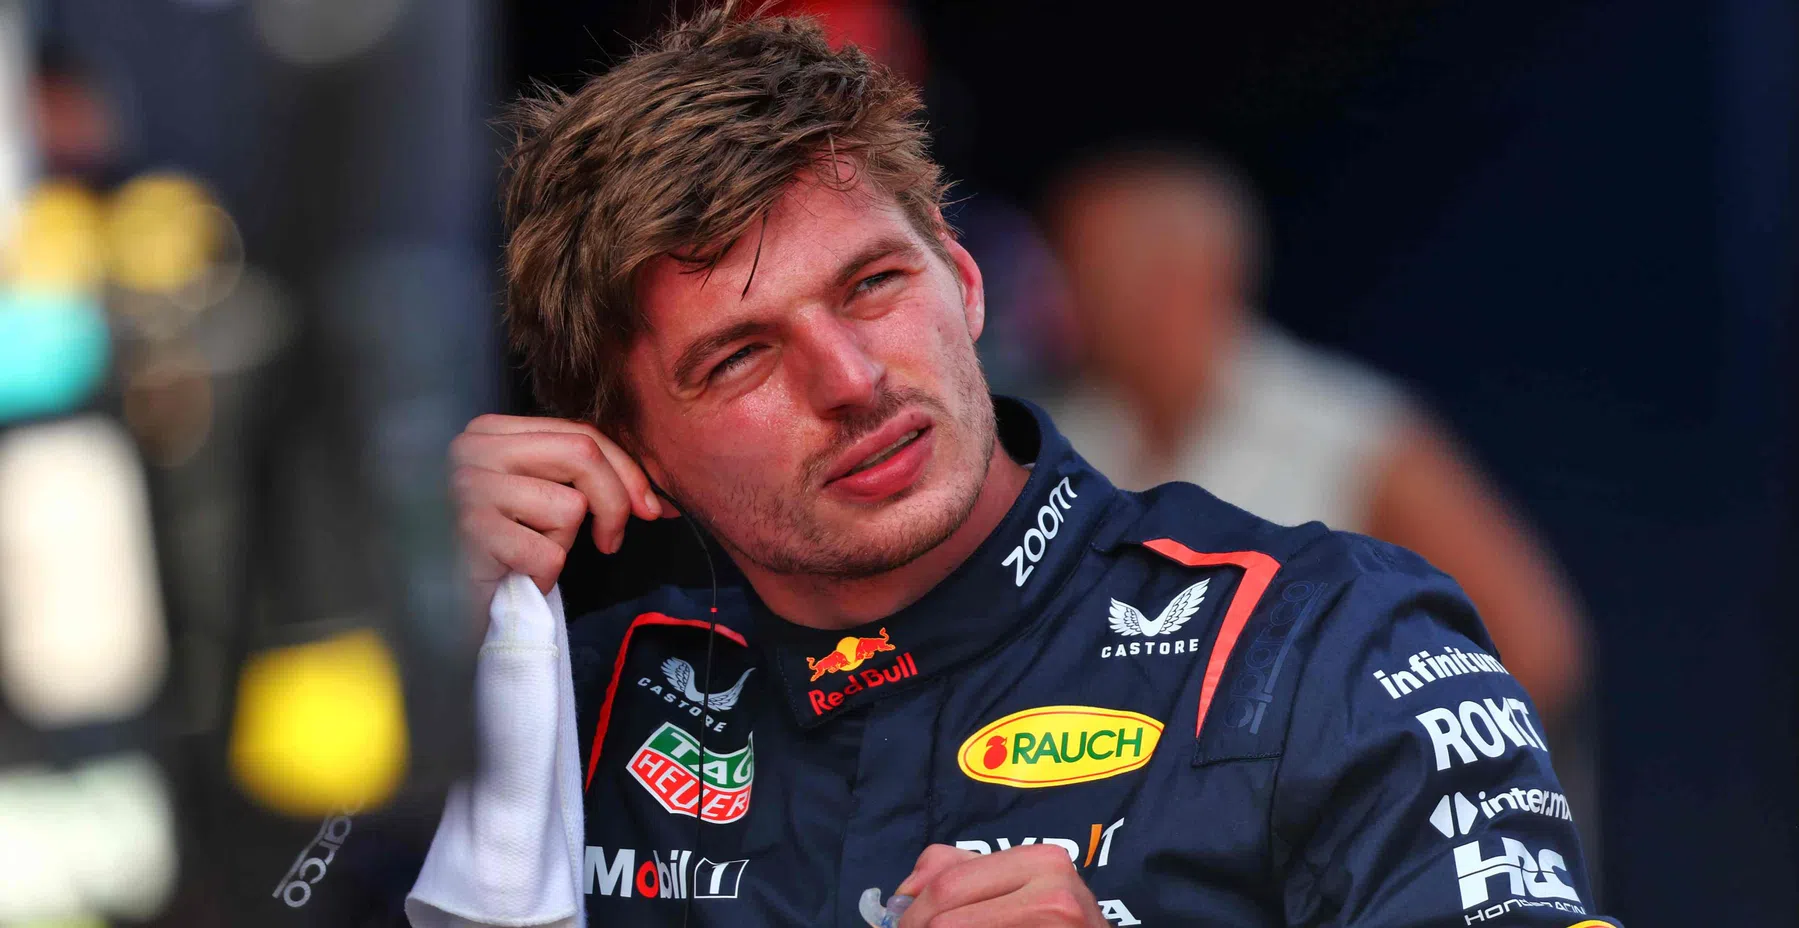 Les analystes de Sky pointent vers Verstappen après l'accident de Norris.